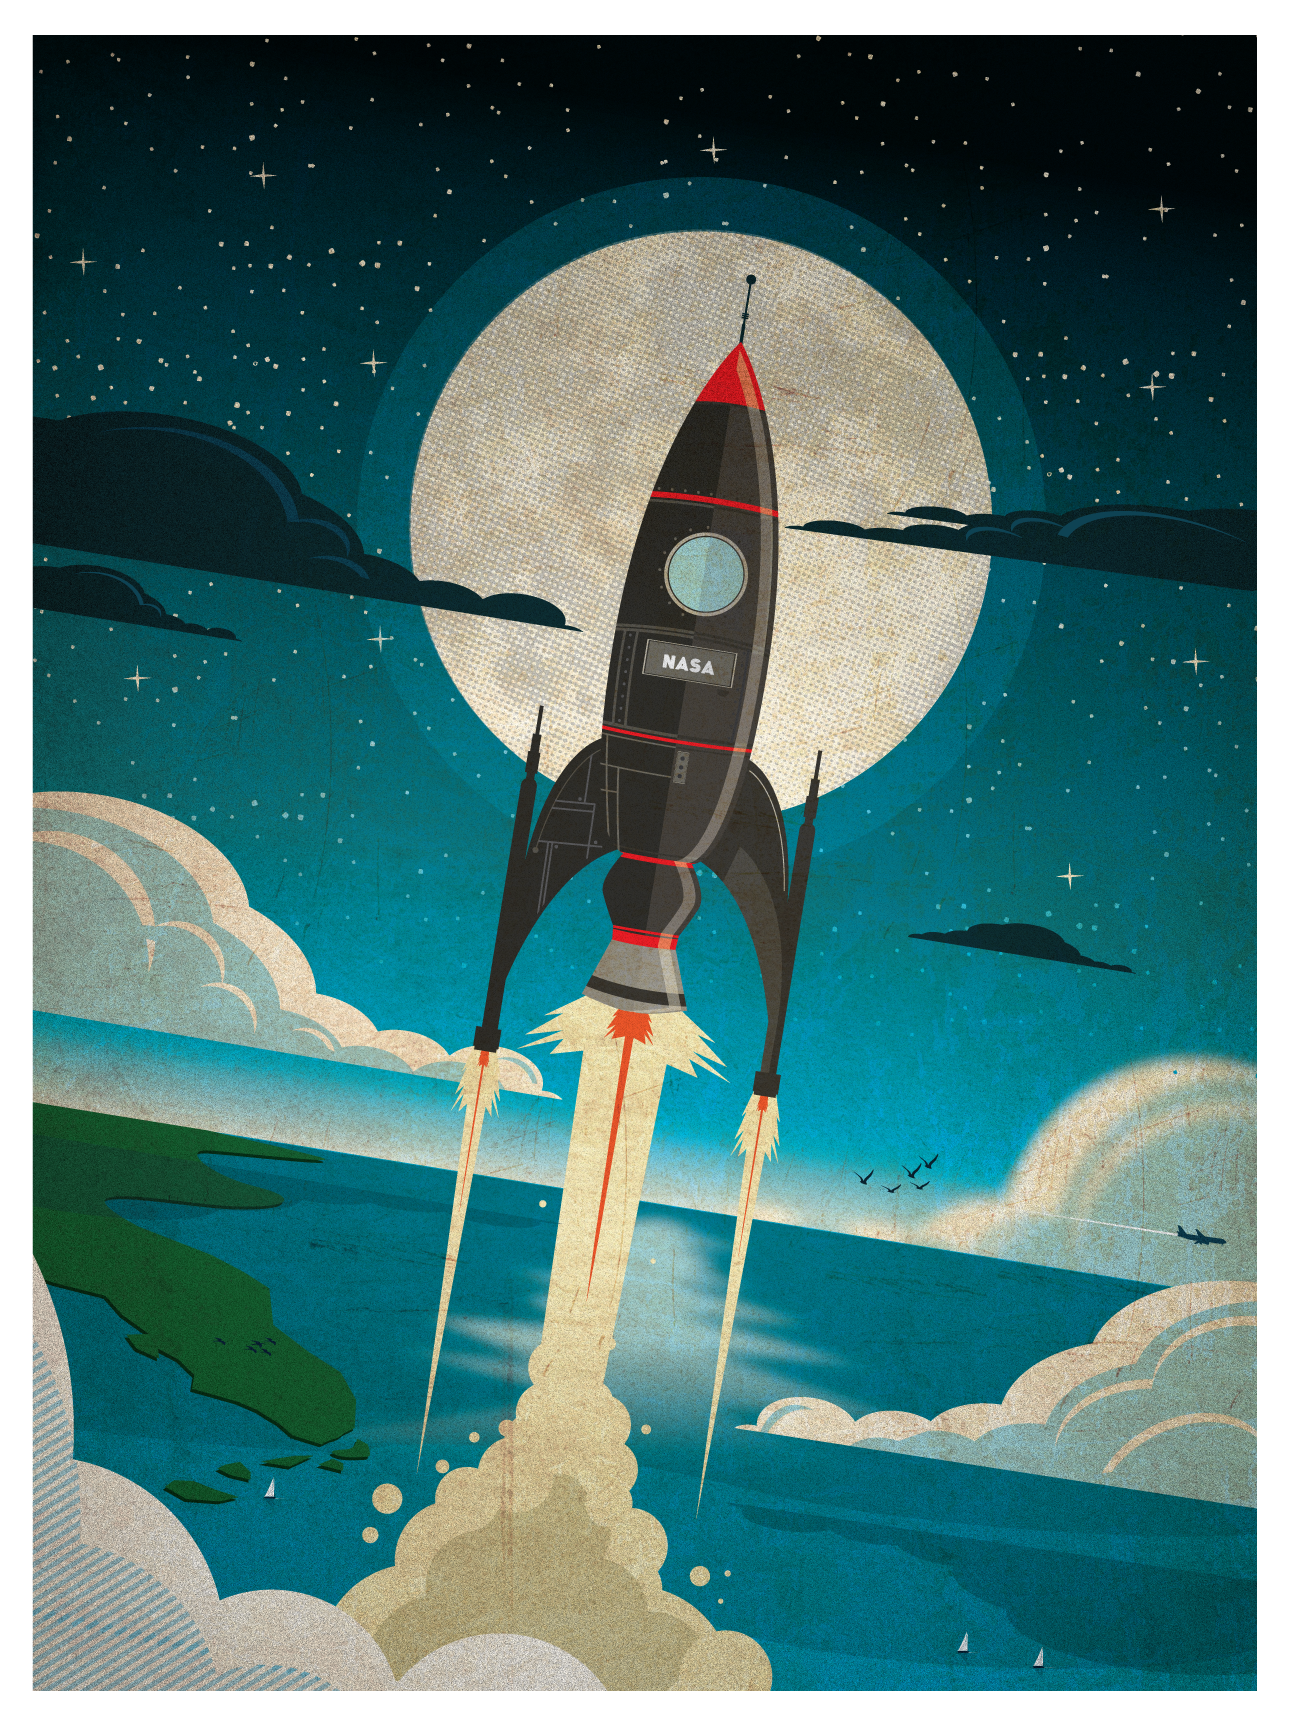 IdeaStorm Studio Store — Rocket to the Moon!